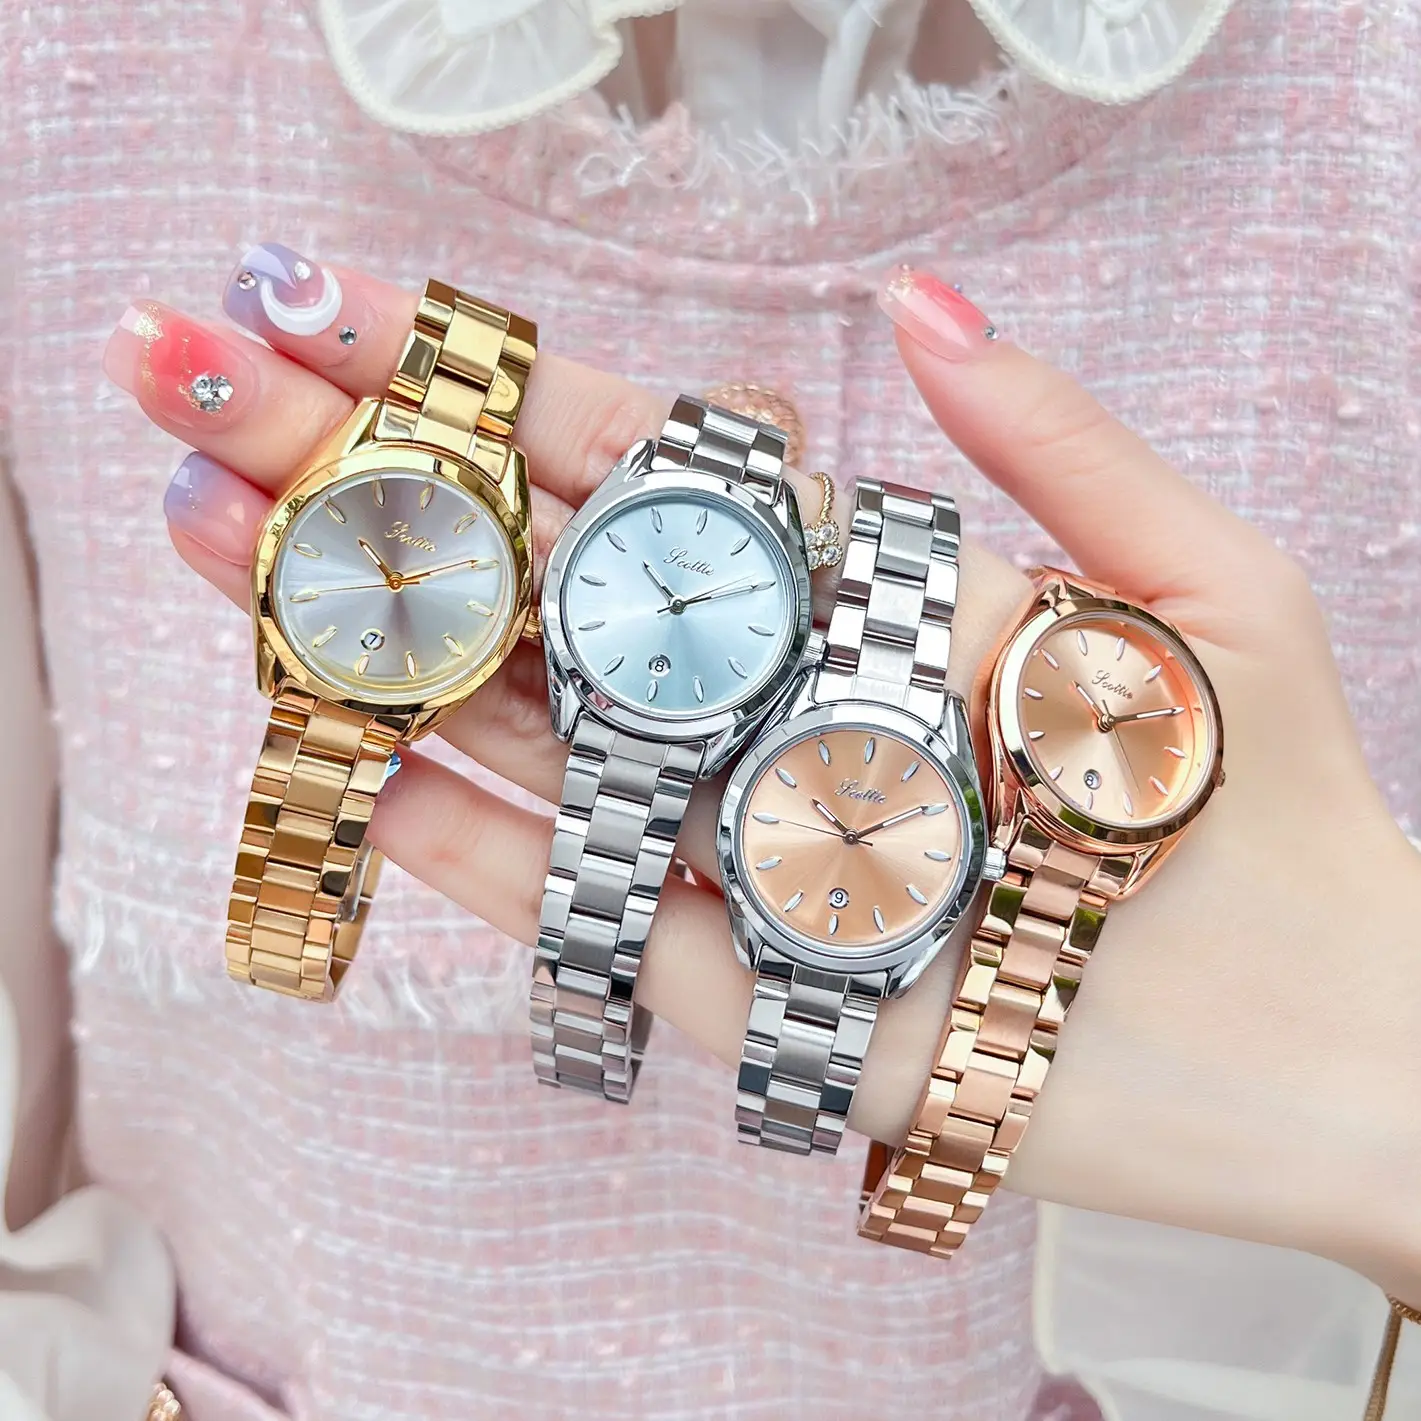 9595 Scottie personnalisé dame fille montre-bracelet en acier inoxydable classique femme horloge femmes montre à quartz résistance à l'eau